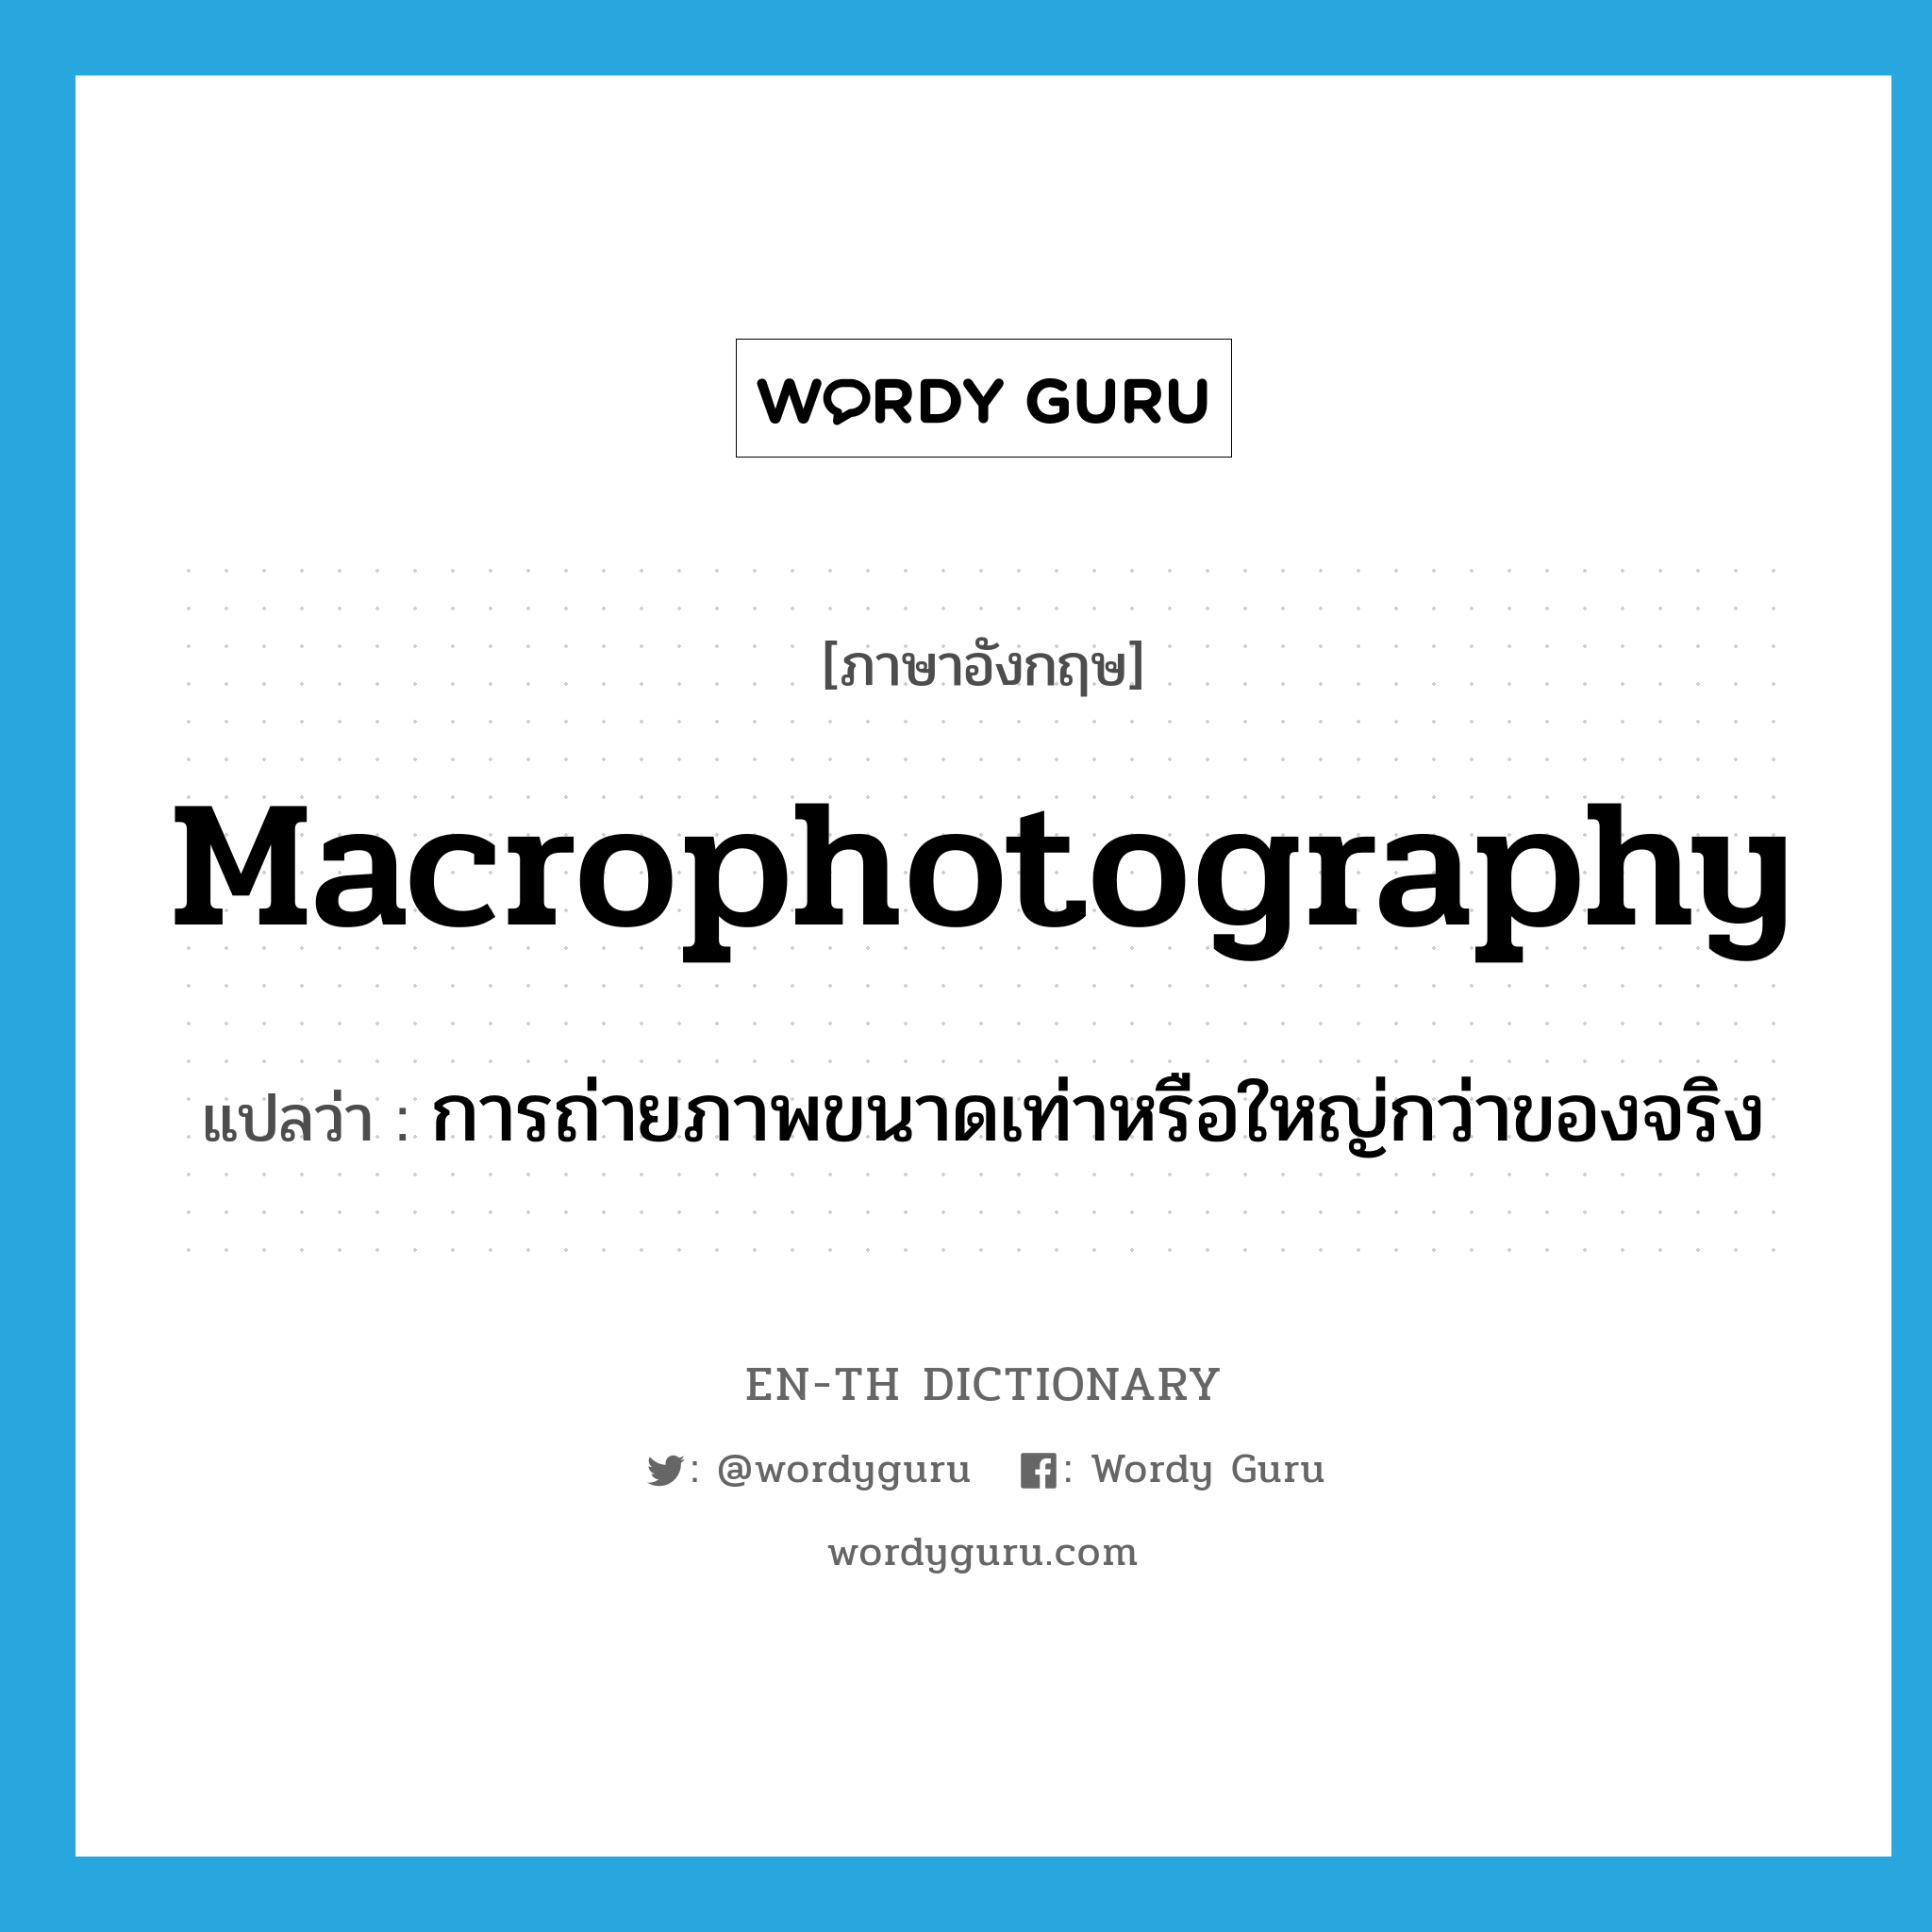 macrophotography แปลว่า?, คำศัพท์ภาษาอังกฤษ macrophotography แปลว่า การถ่ายภาพขนาดเท่าหรือใหญ่กว่าของจริง ประเภท N หมวด N